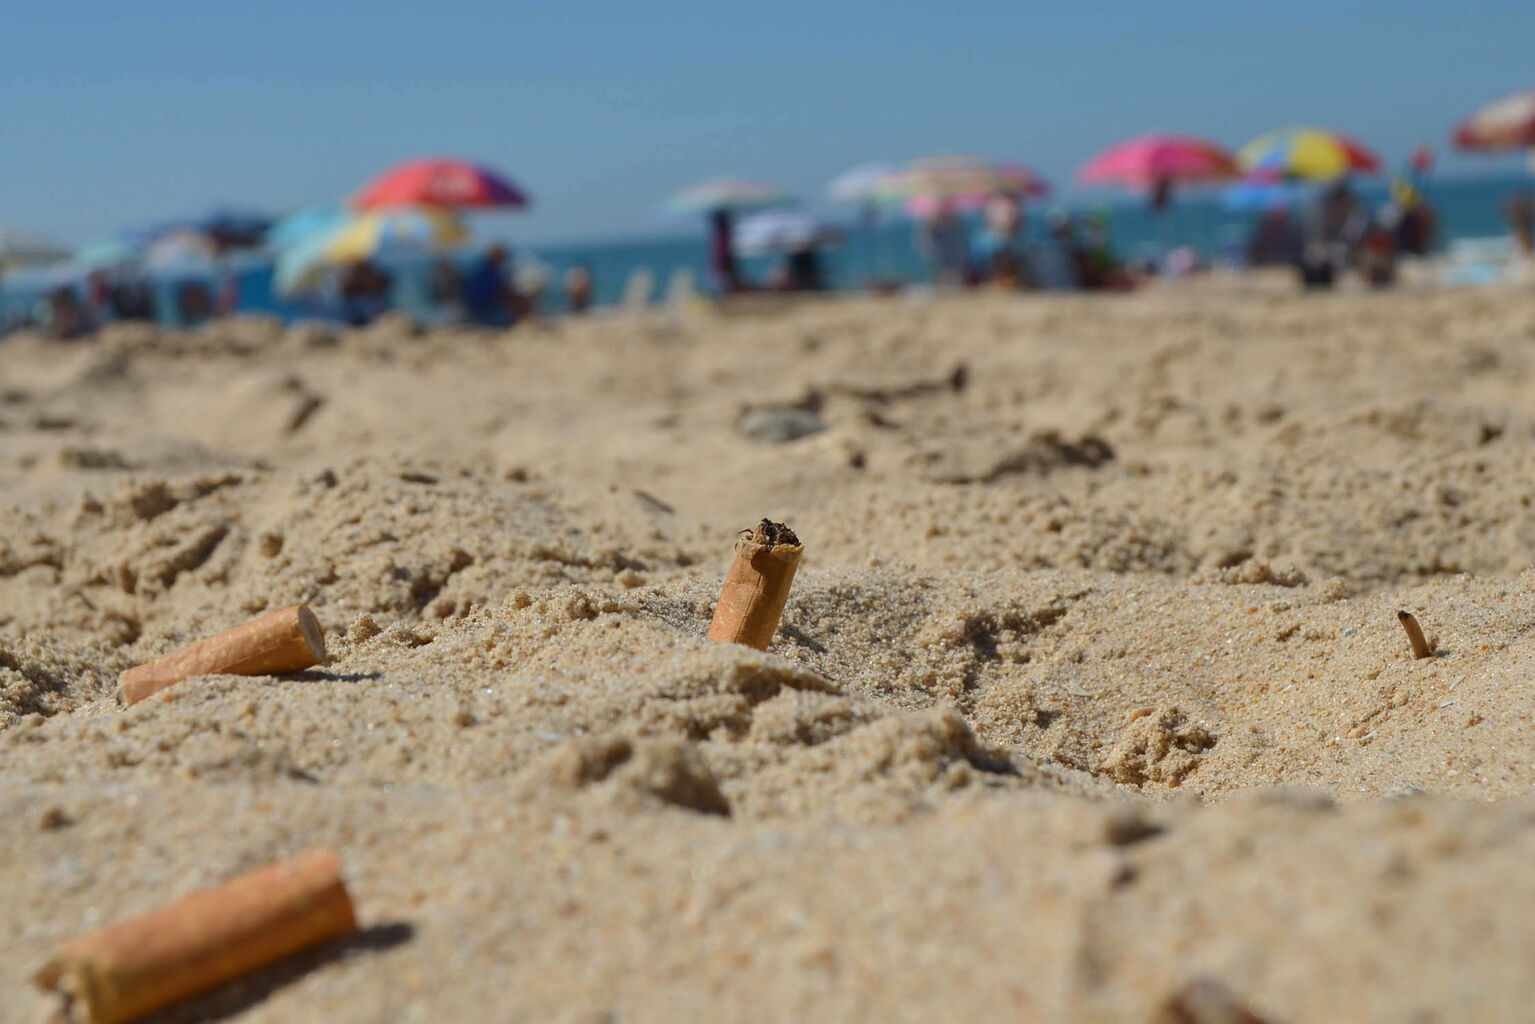 Valery Rodríguez de Imeko sobre la Ley Chao Colilla: “Para muchos fumadores botar la colilla al suelo y pisarla es un ritual”